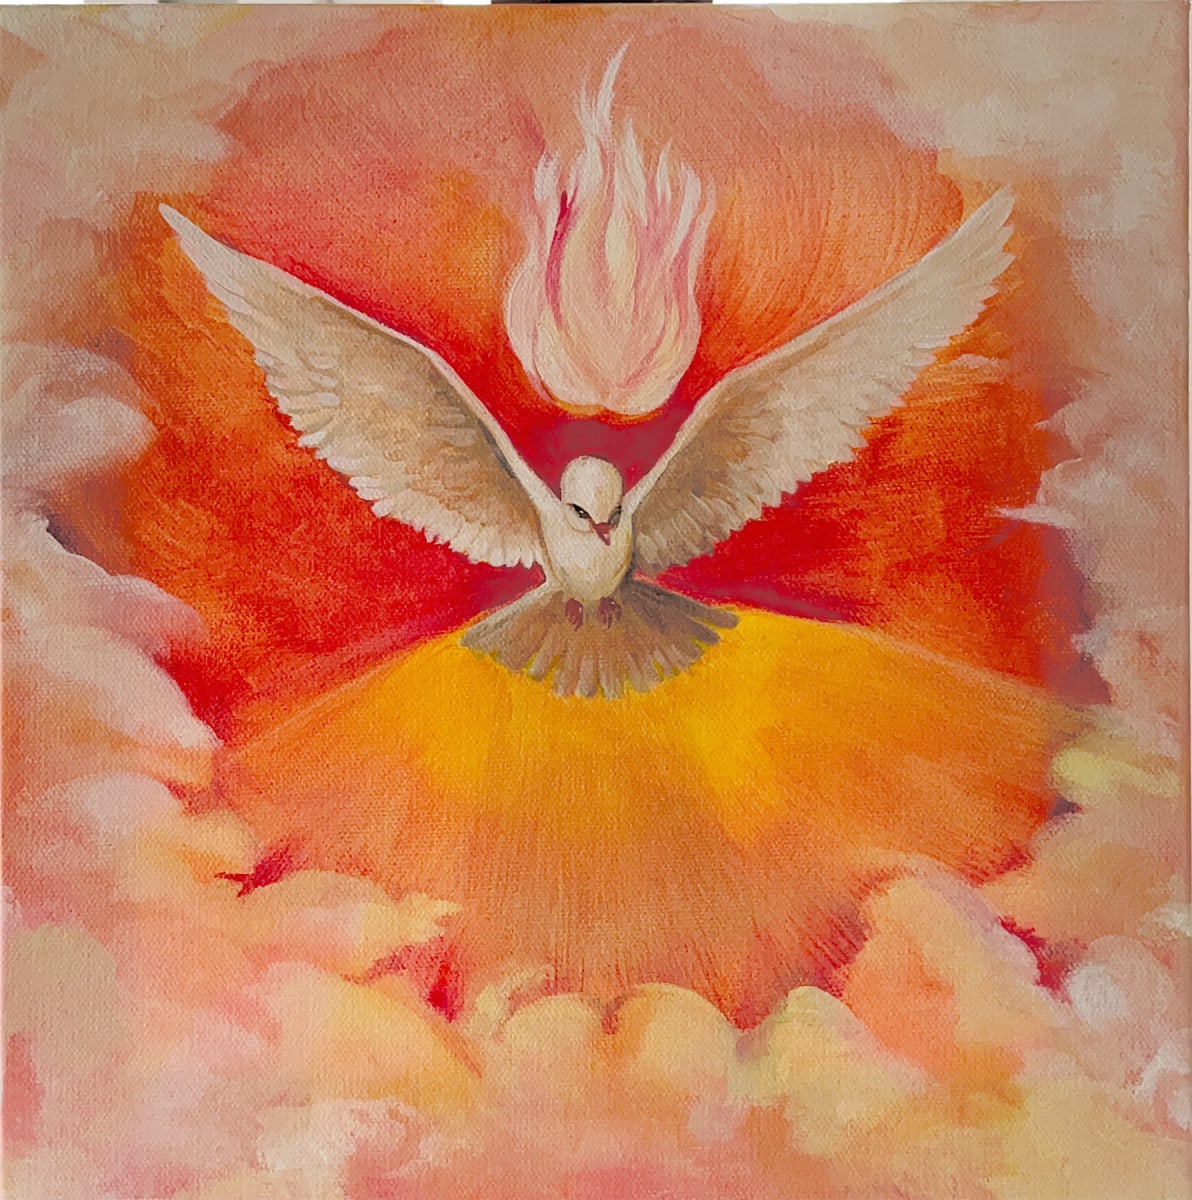 Holy Spirit by Caitlin G McCollom 